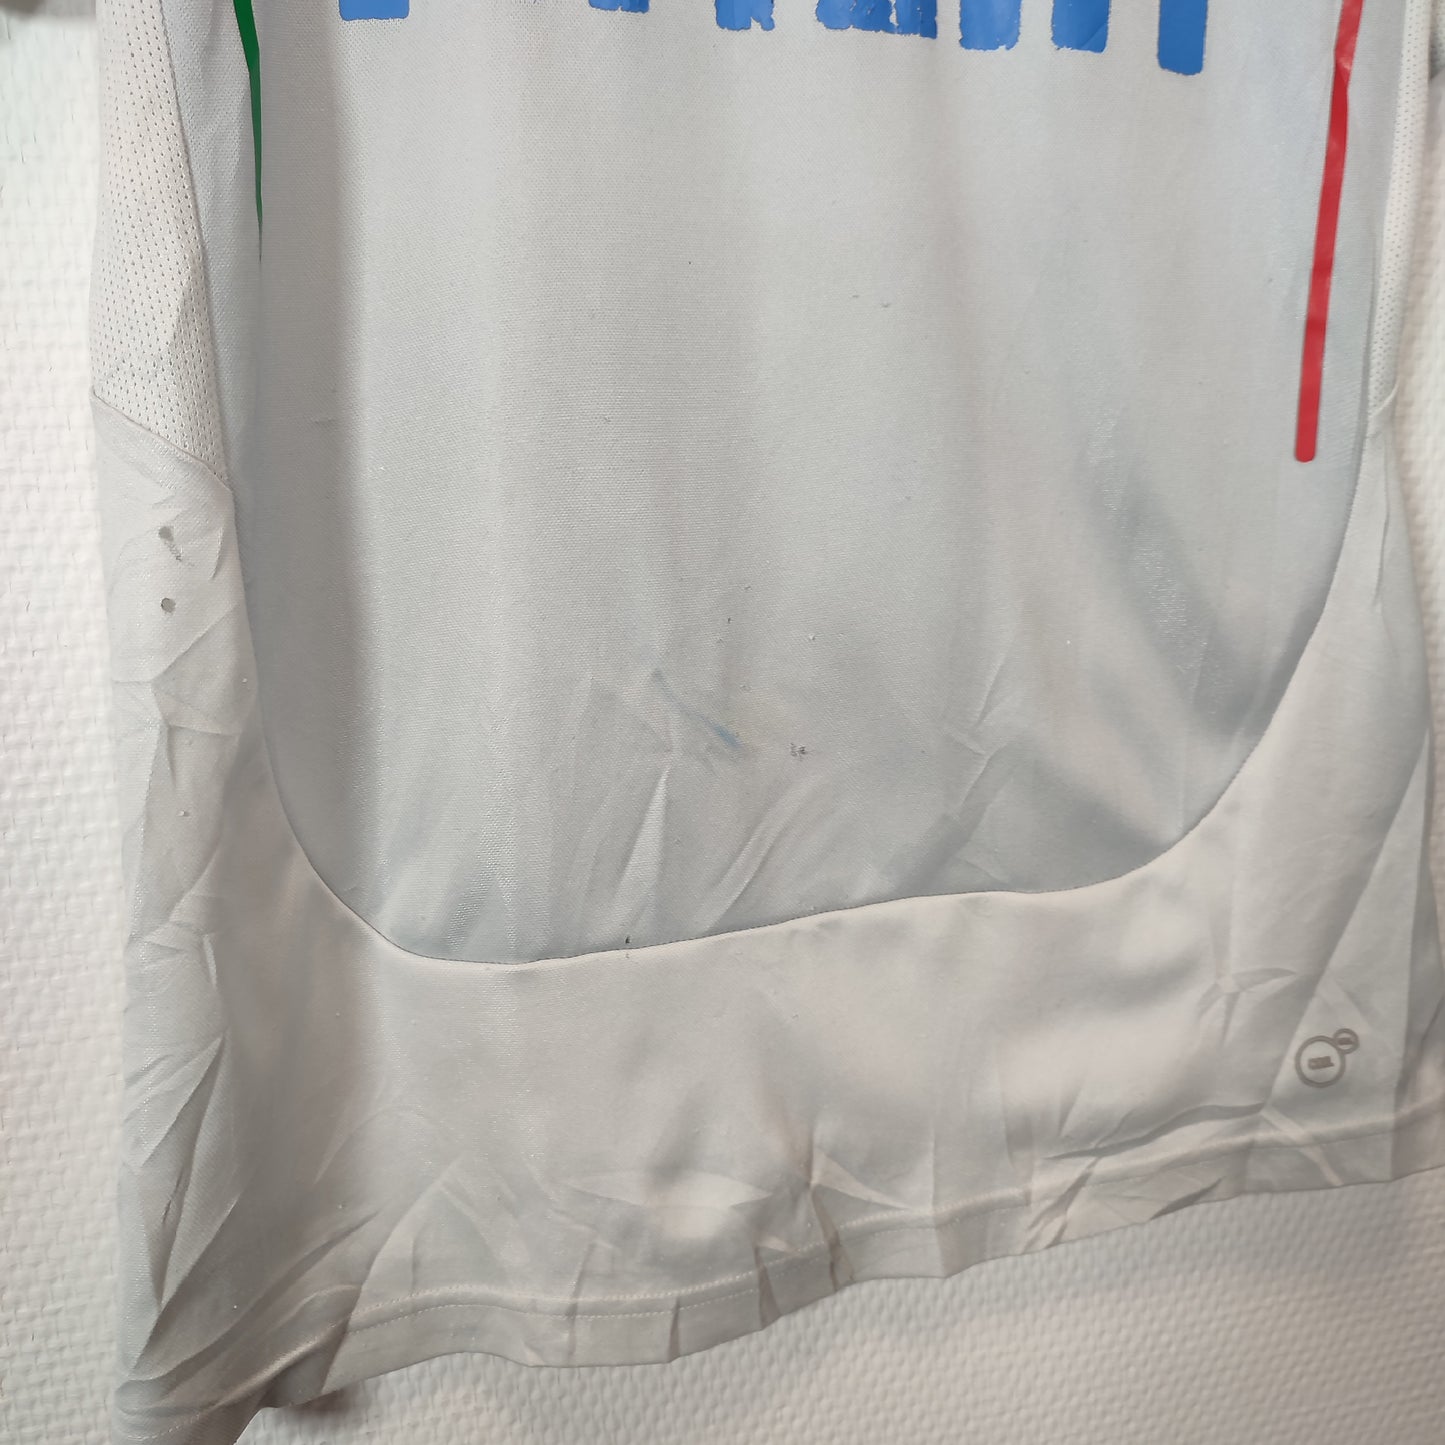 Maillot de foot Puma x Italie